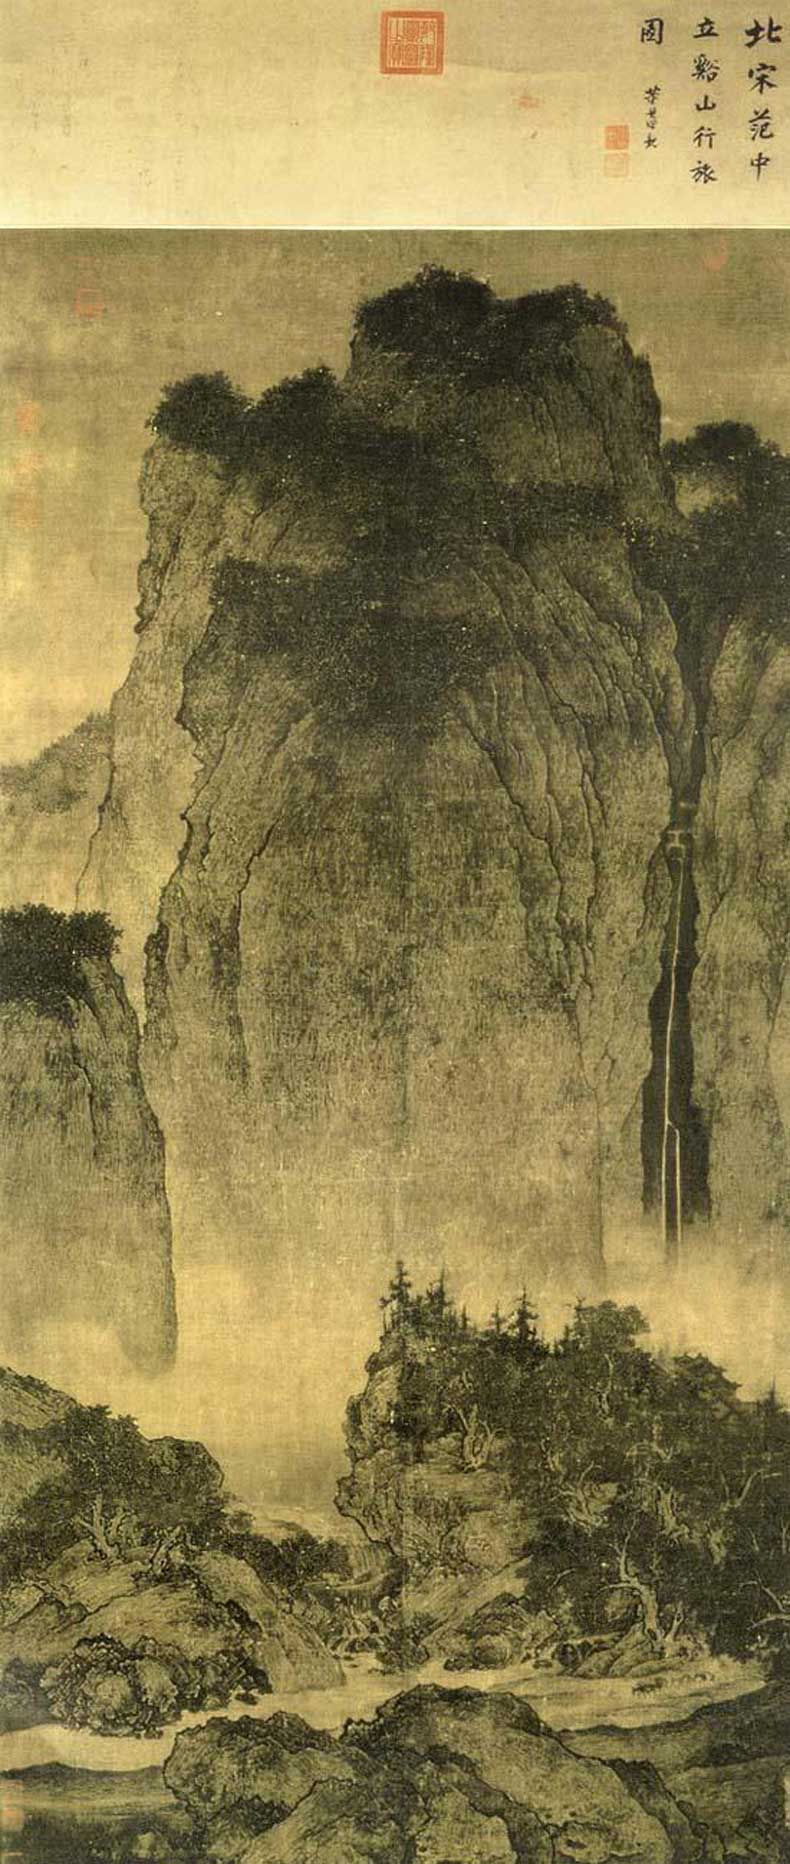 《溪山行旅图》，现藏于台北故宫博物院， 绢本，206.3厘米X 103.3 厘米。